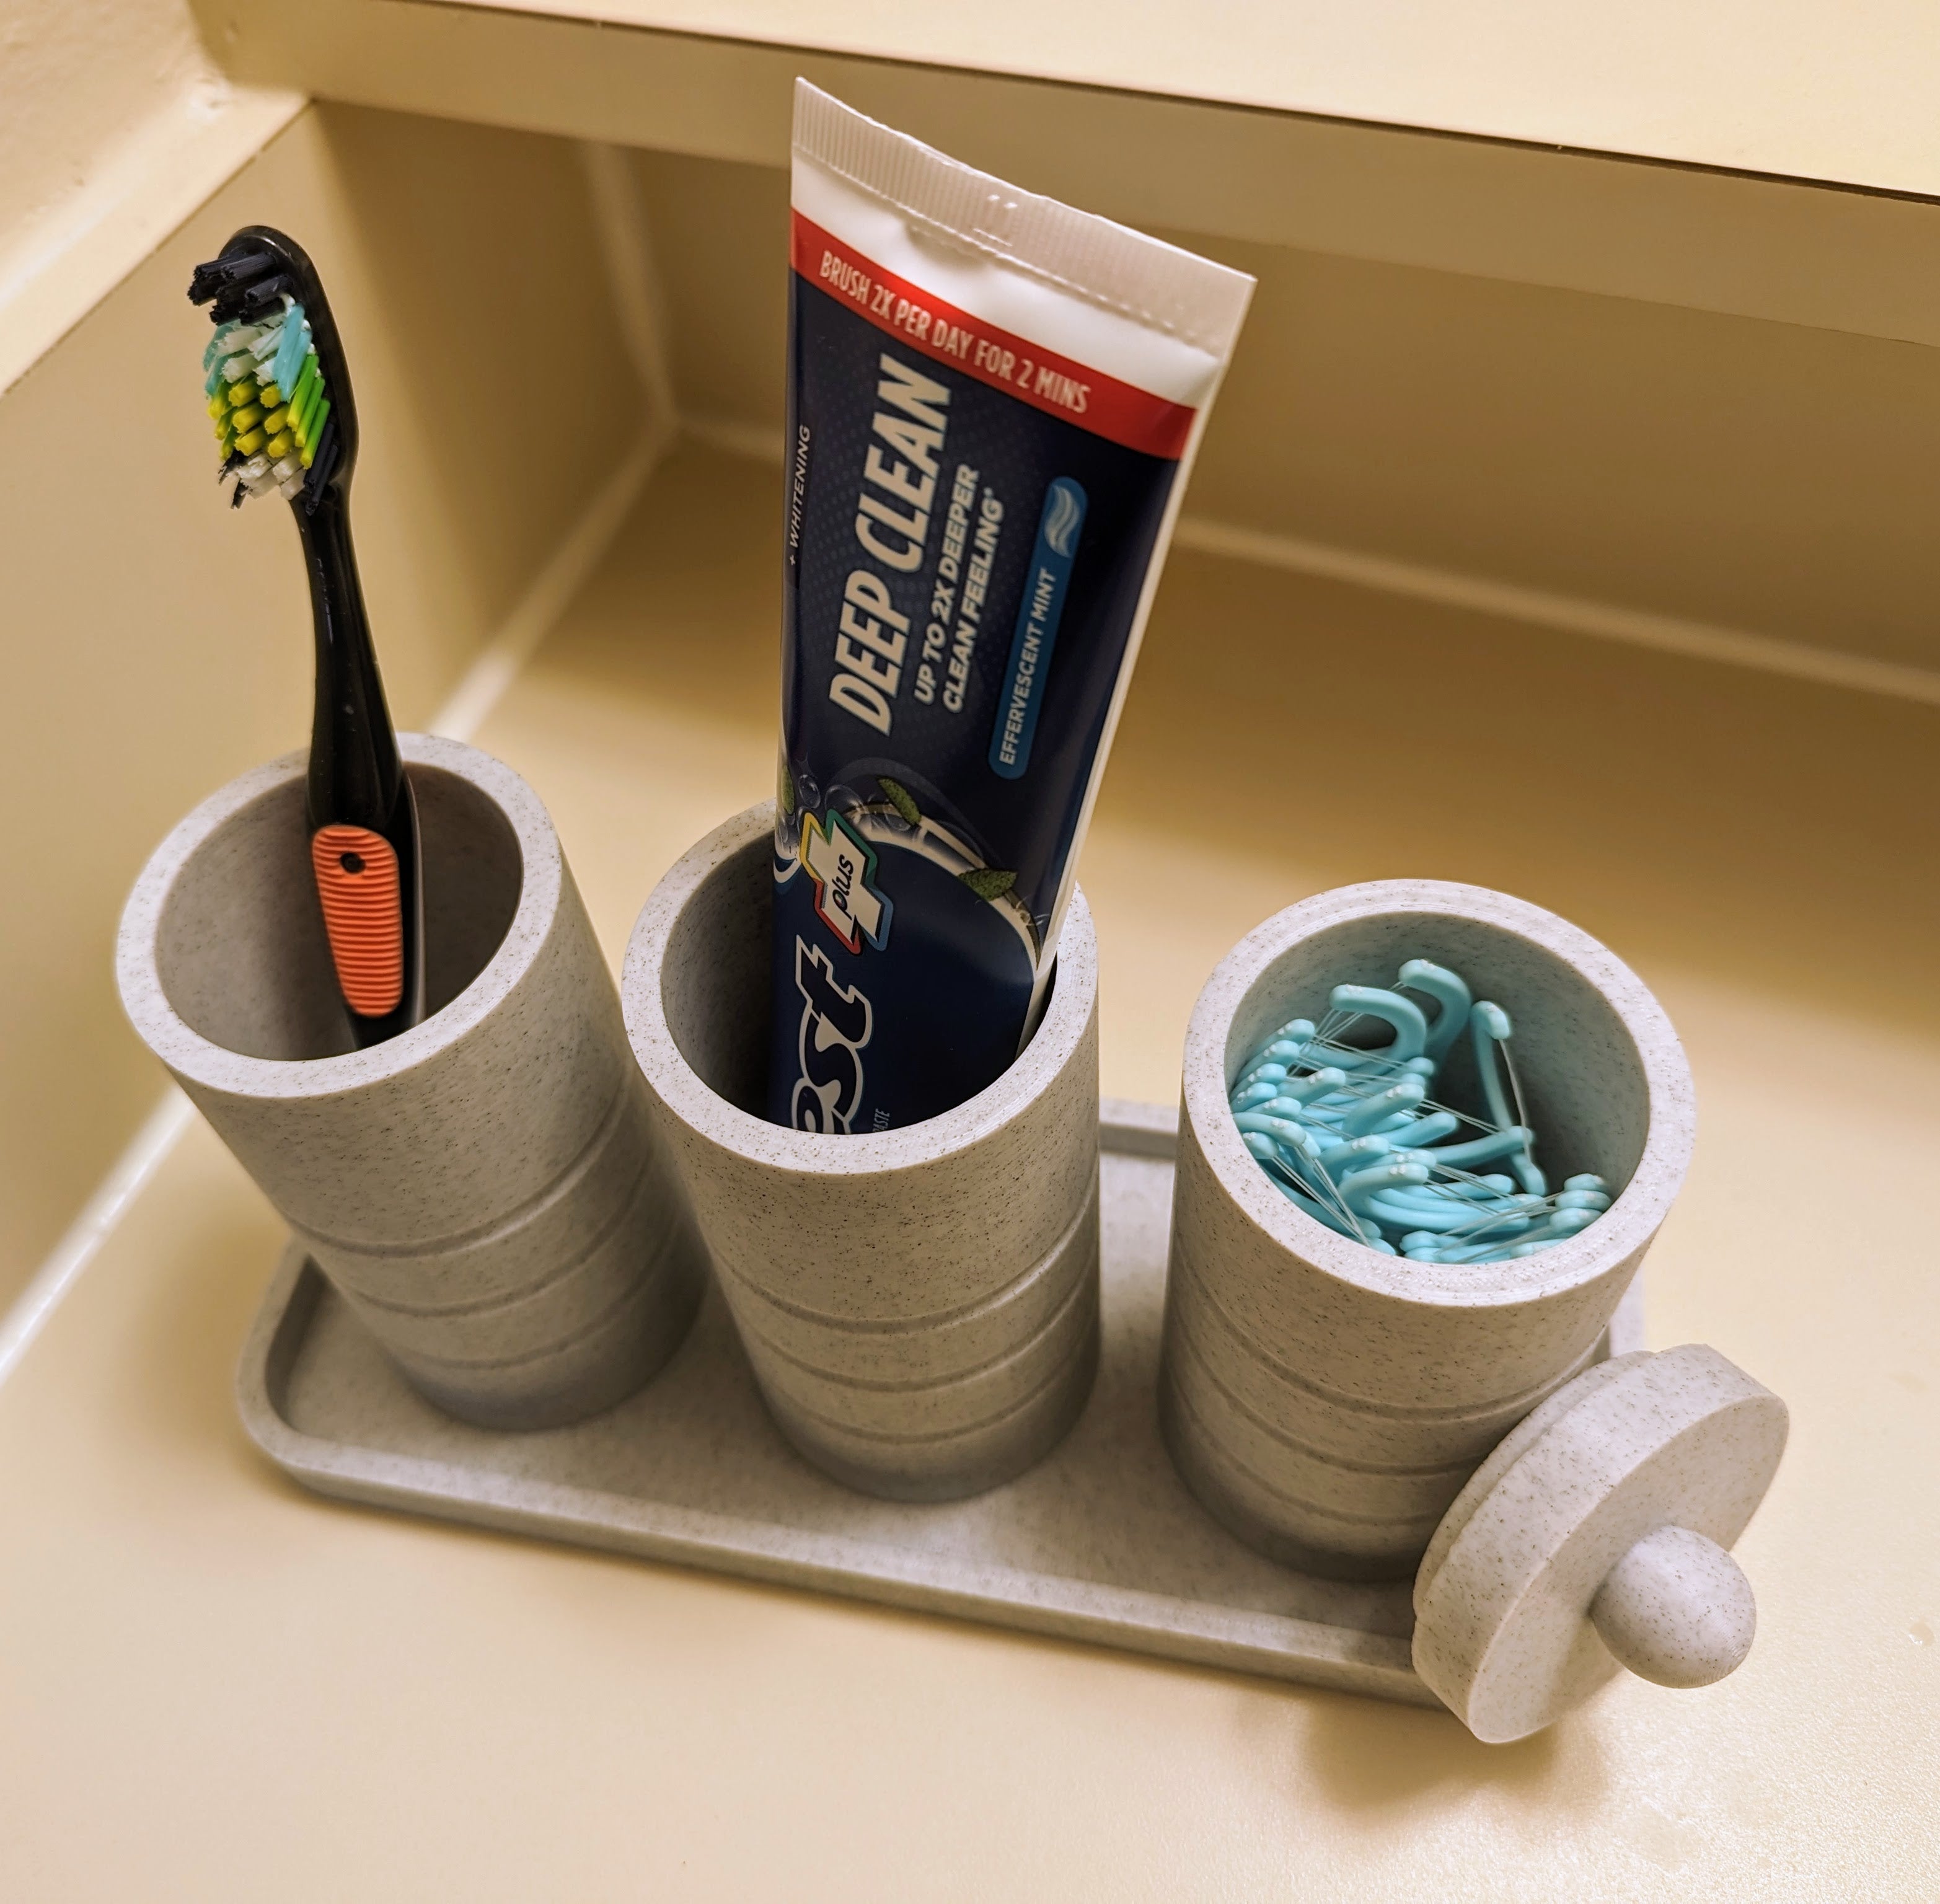 Badrumsarrangör för tandborstar och Q-tips